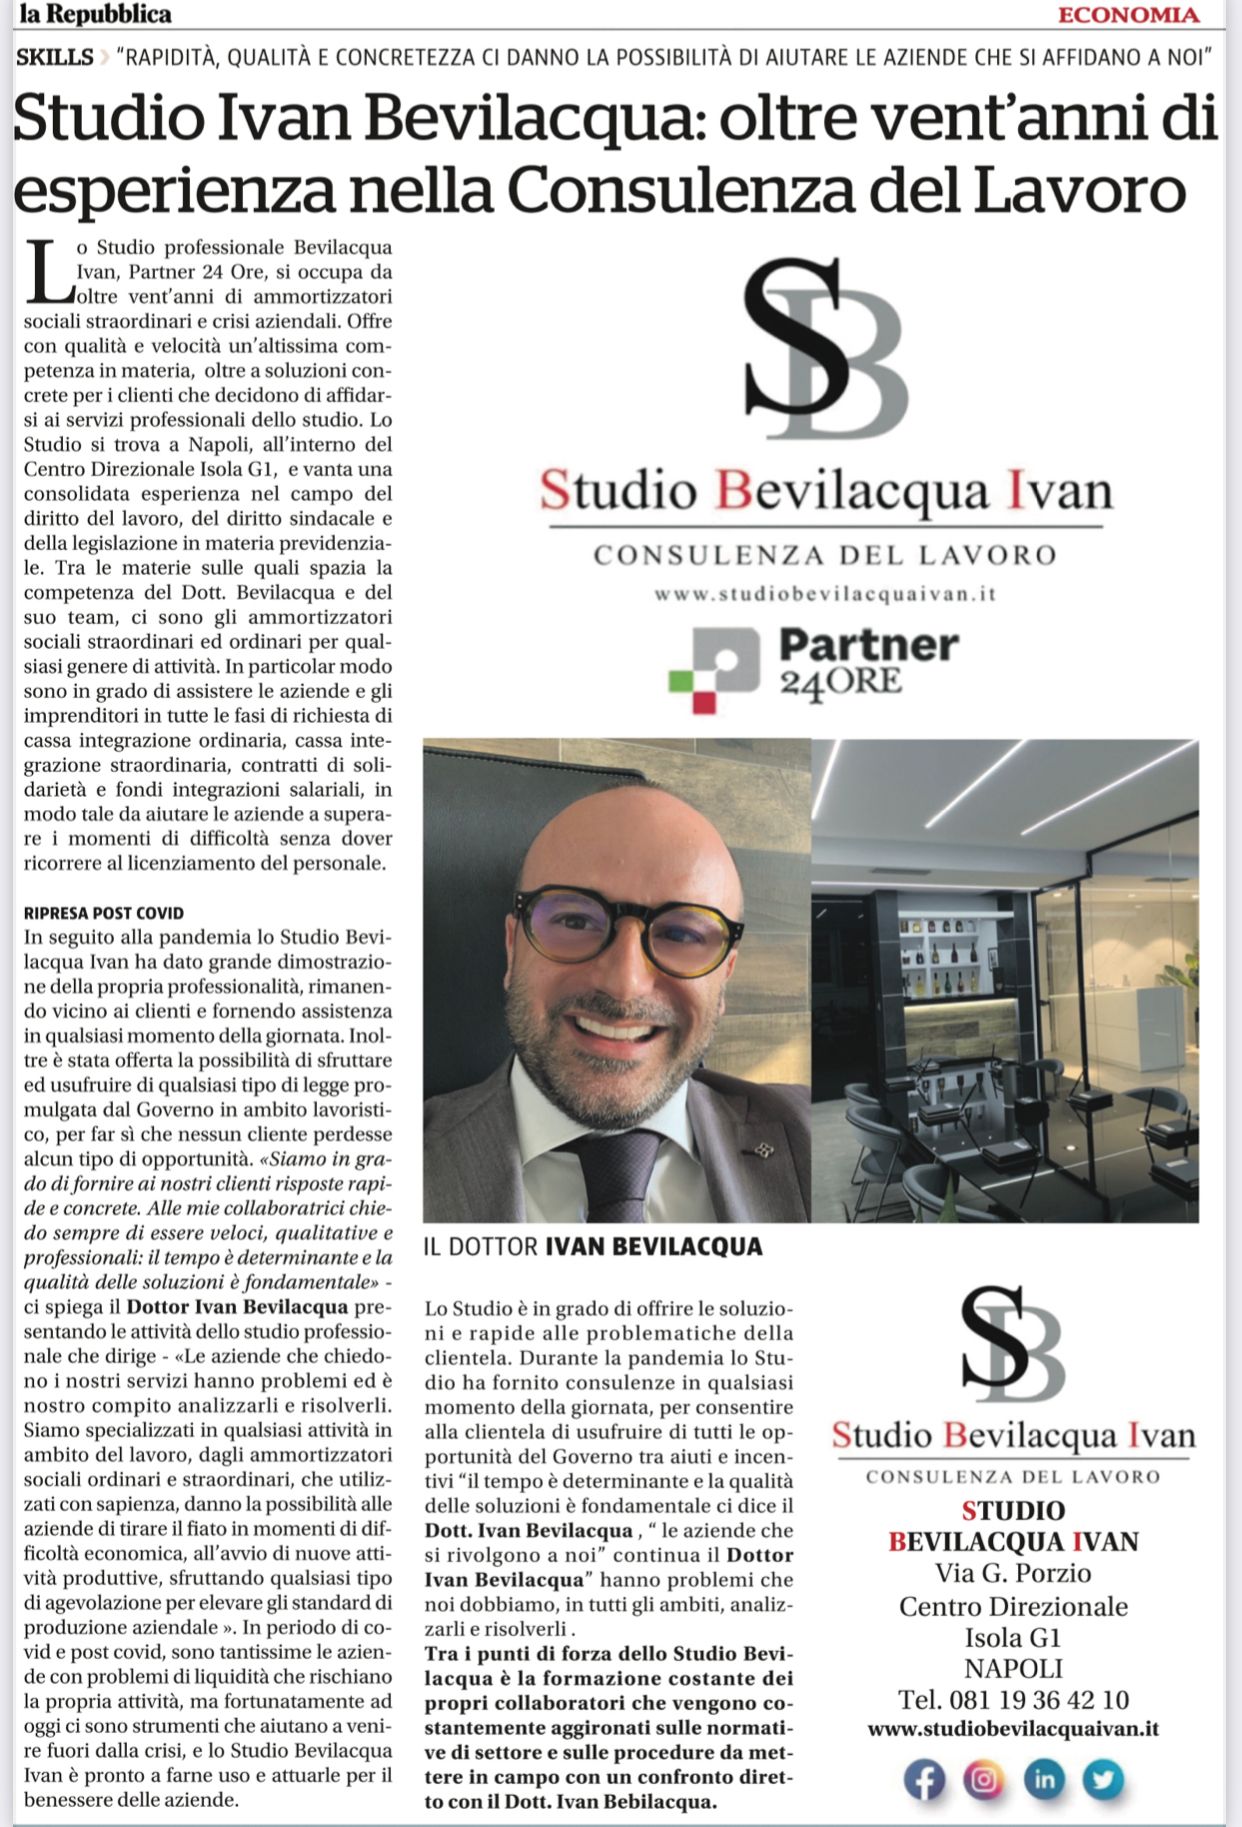 Studio Ivan Bevilacqua su Repubblica Economia del 31 Gennaio 2022